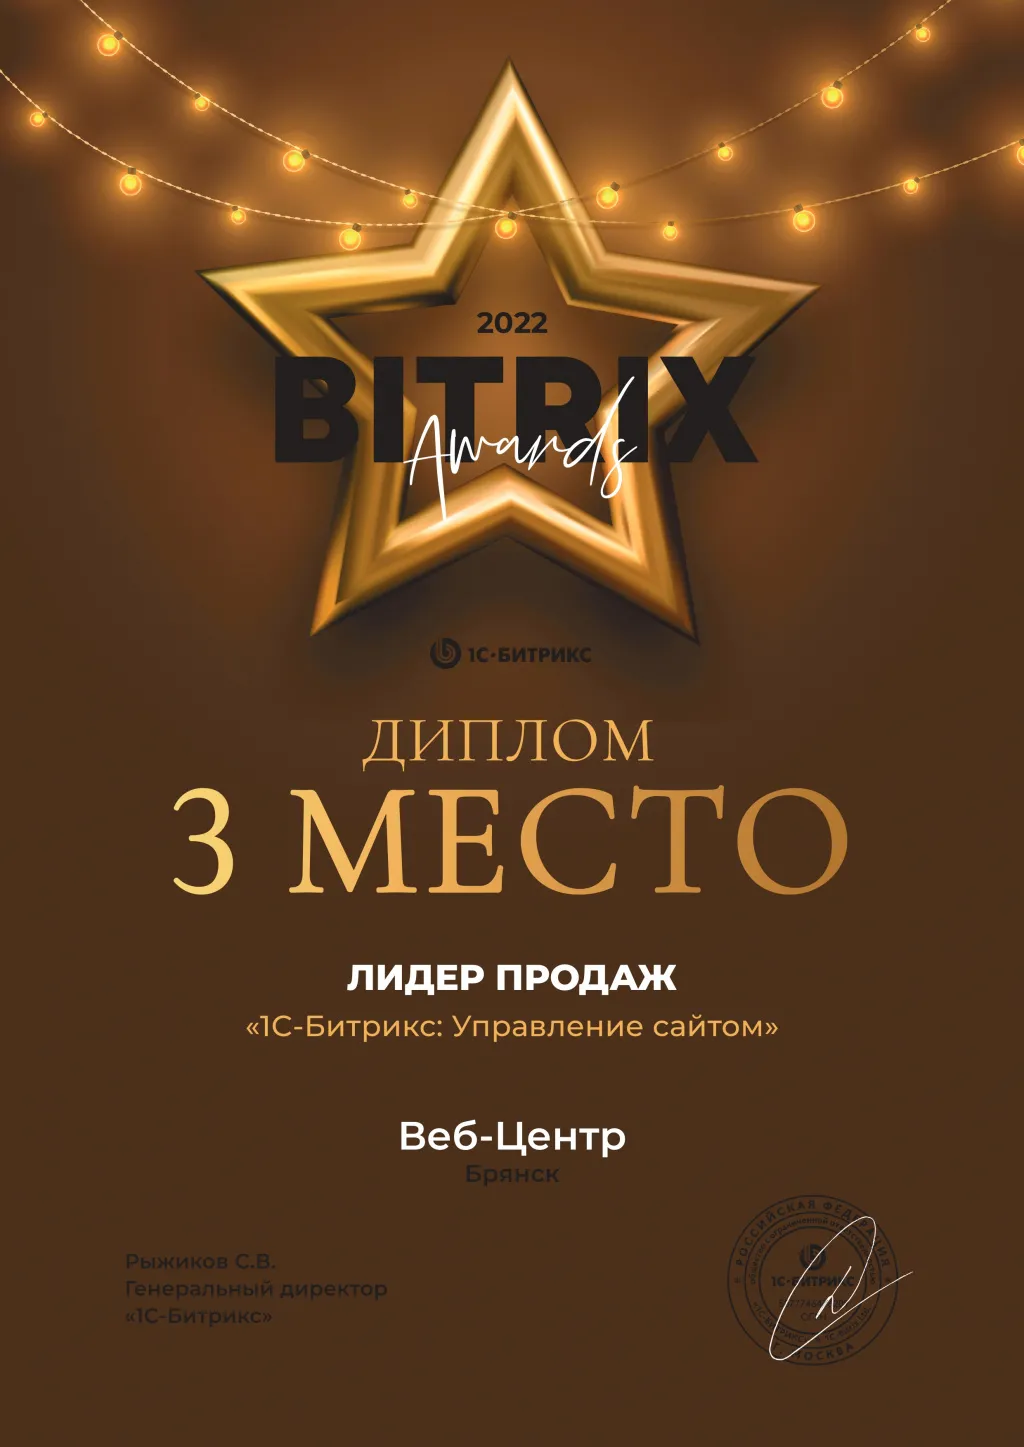 3 место лидер продаж «1С-Битрикс: Управление сайтом» | Россия